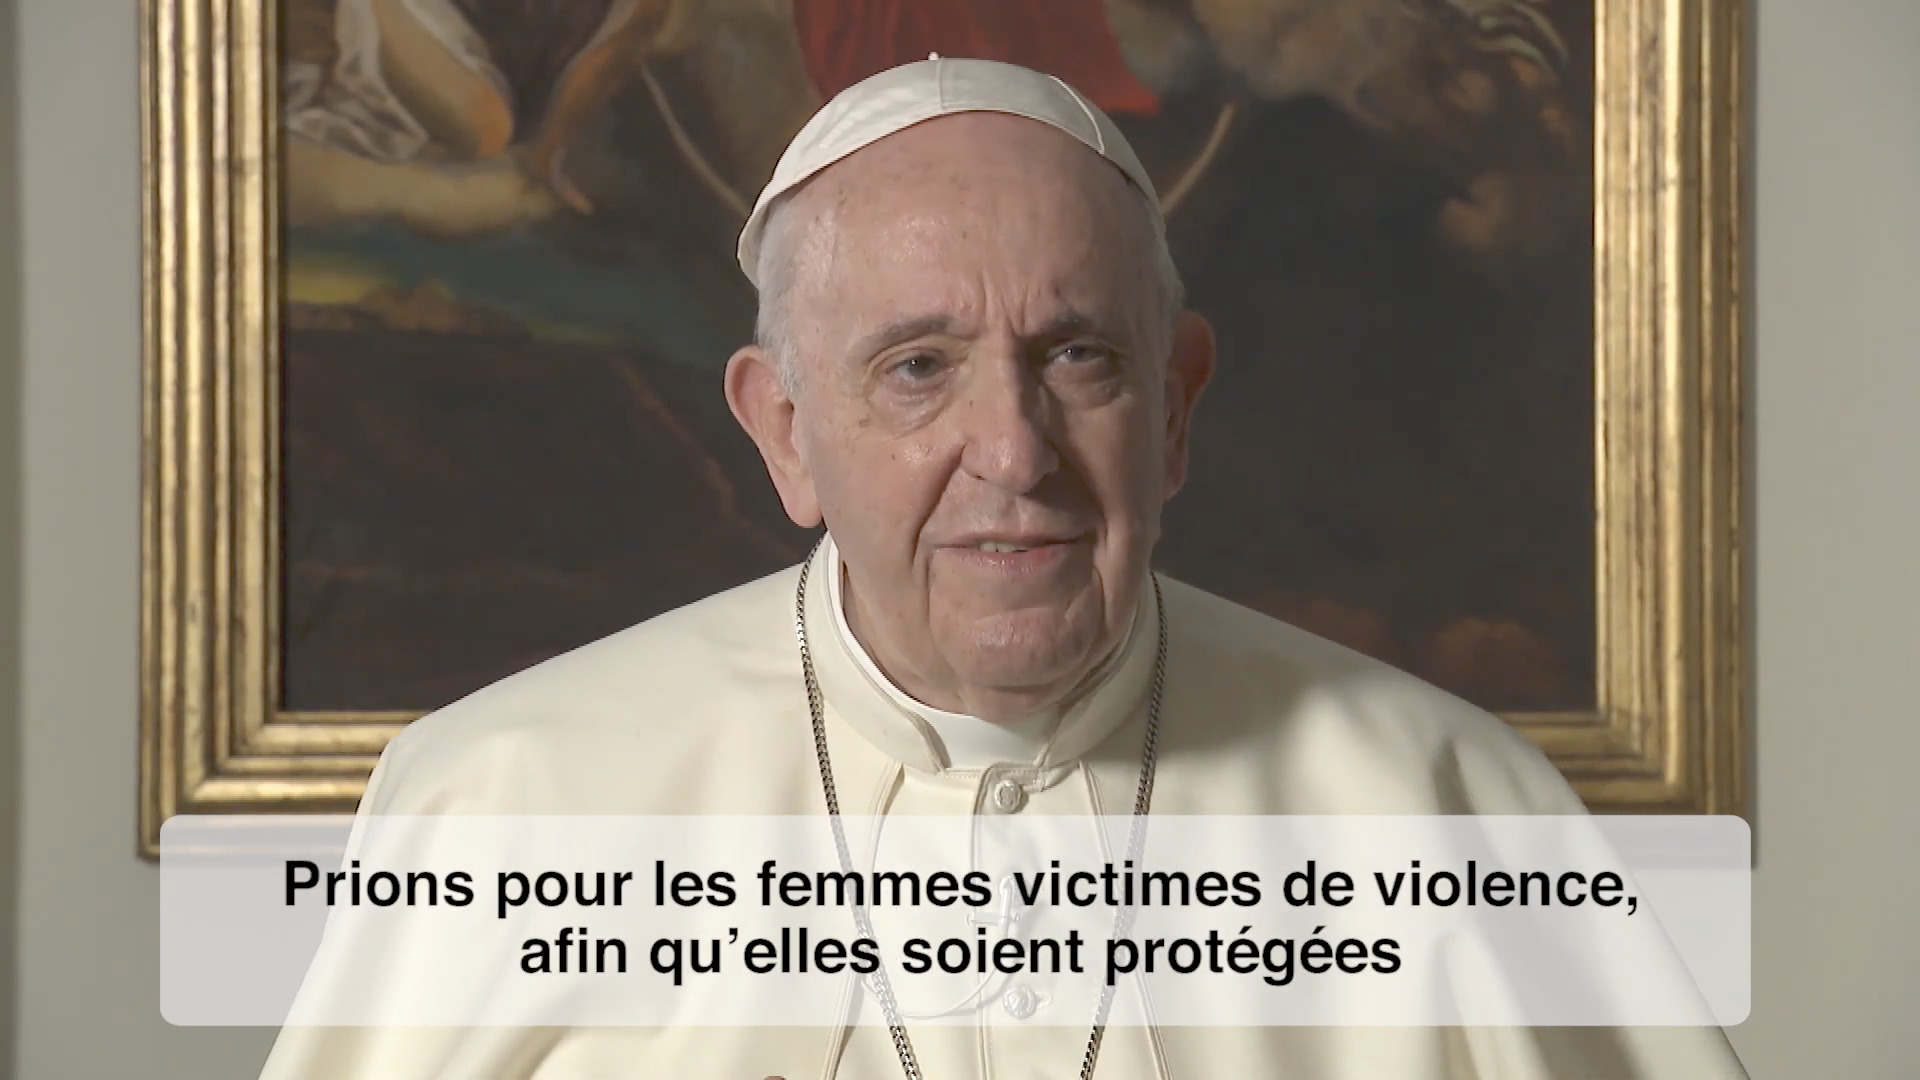 François dénonce la violence faite aux femmes 0087eaf7-capture-decran-2021-02-01-a-17-37-30